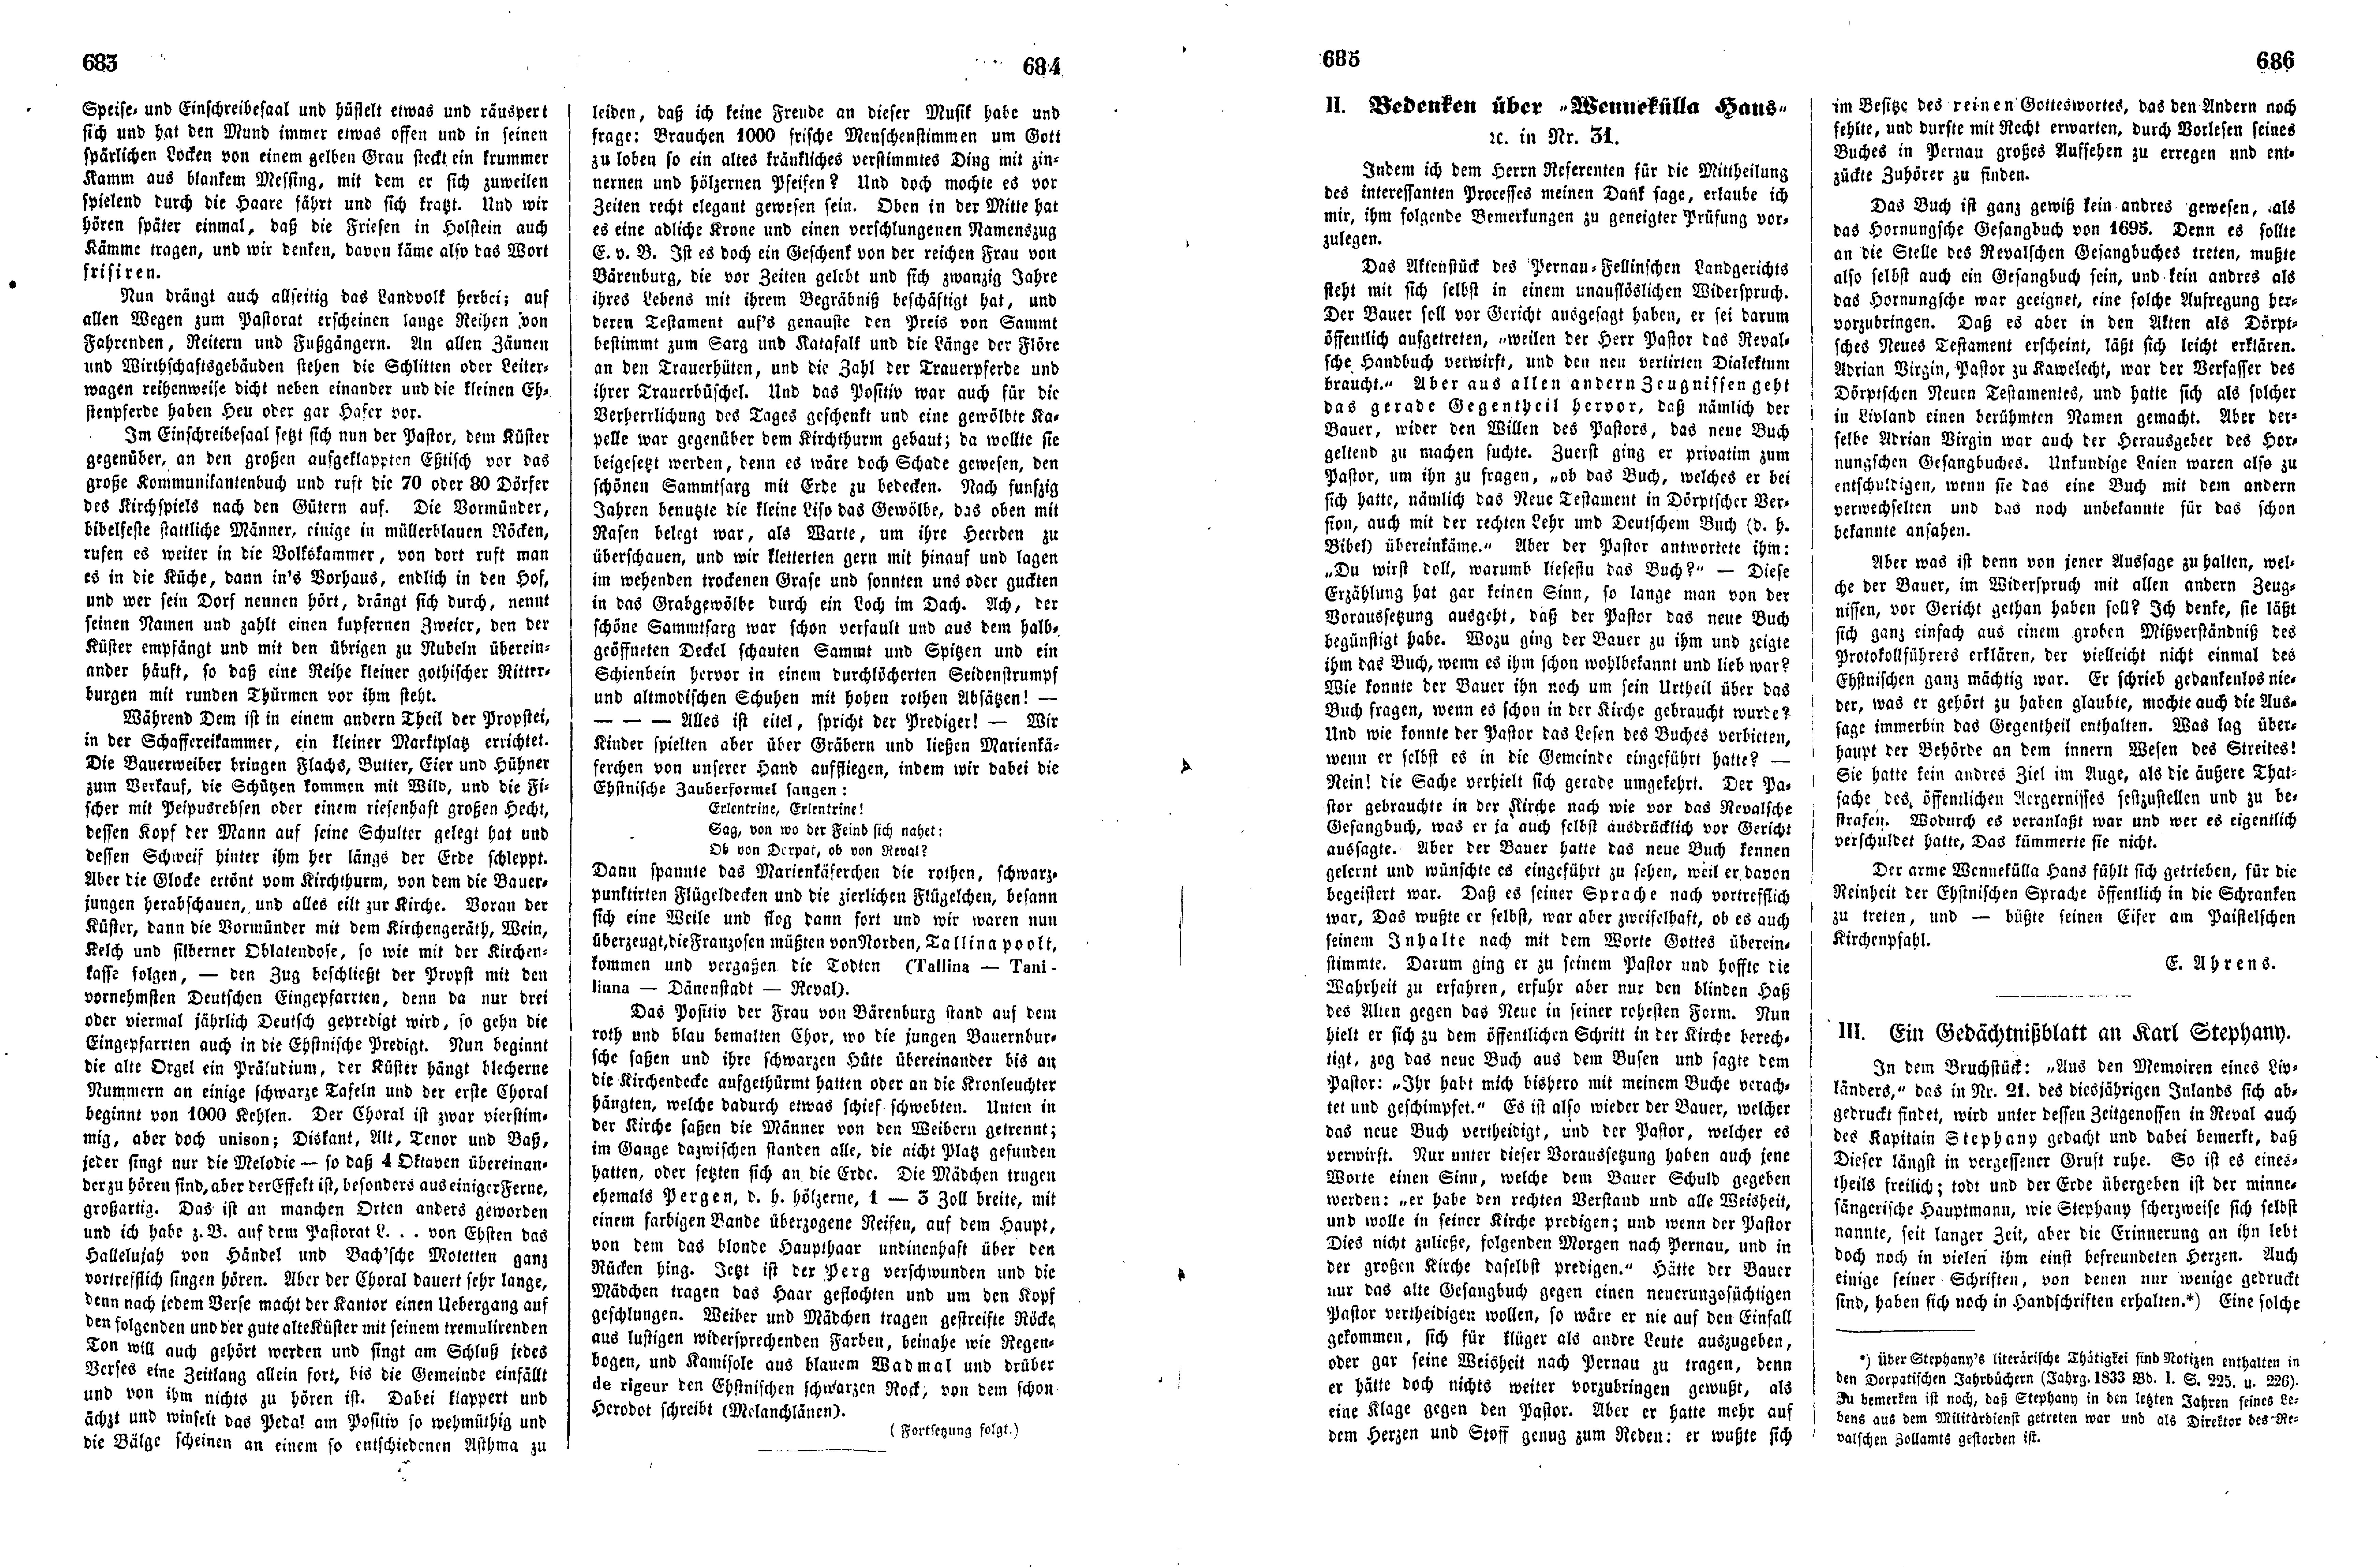 Baltische Skizzen oder Funfzig Jahre zurück [11] (Ein Sonntag auf einem Landschen Pastorat) (1852) | 2. (683-686) Haupttext